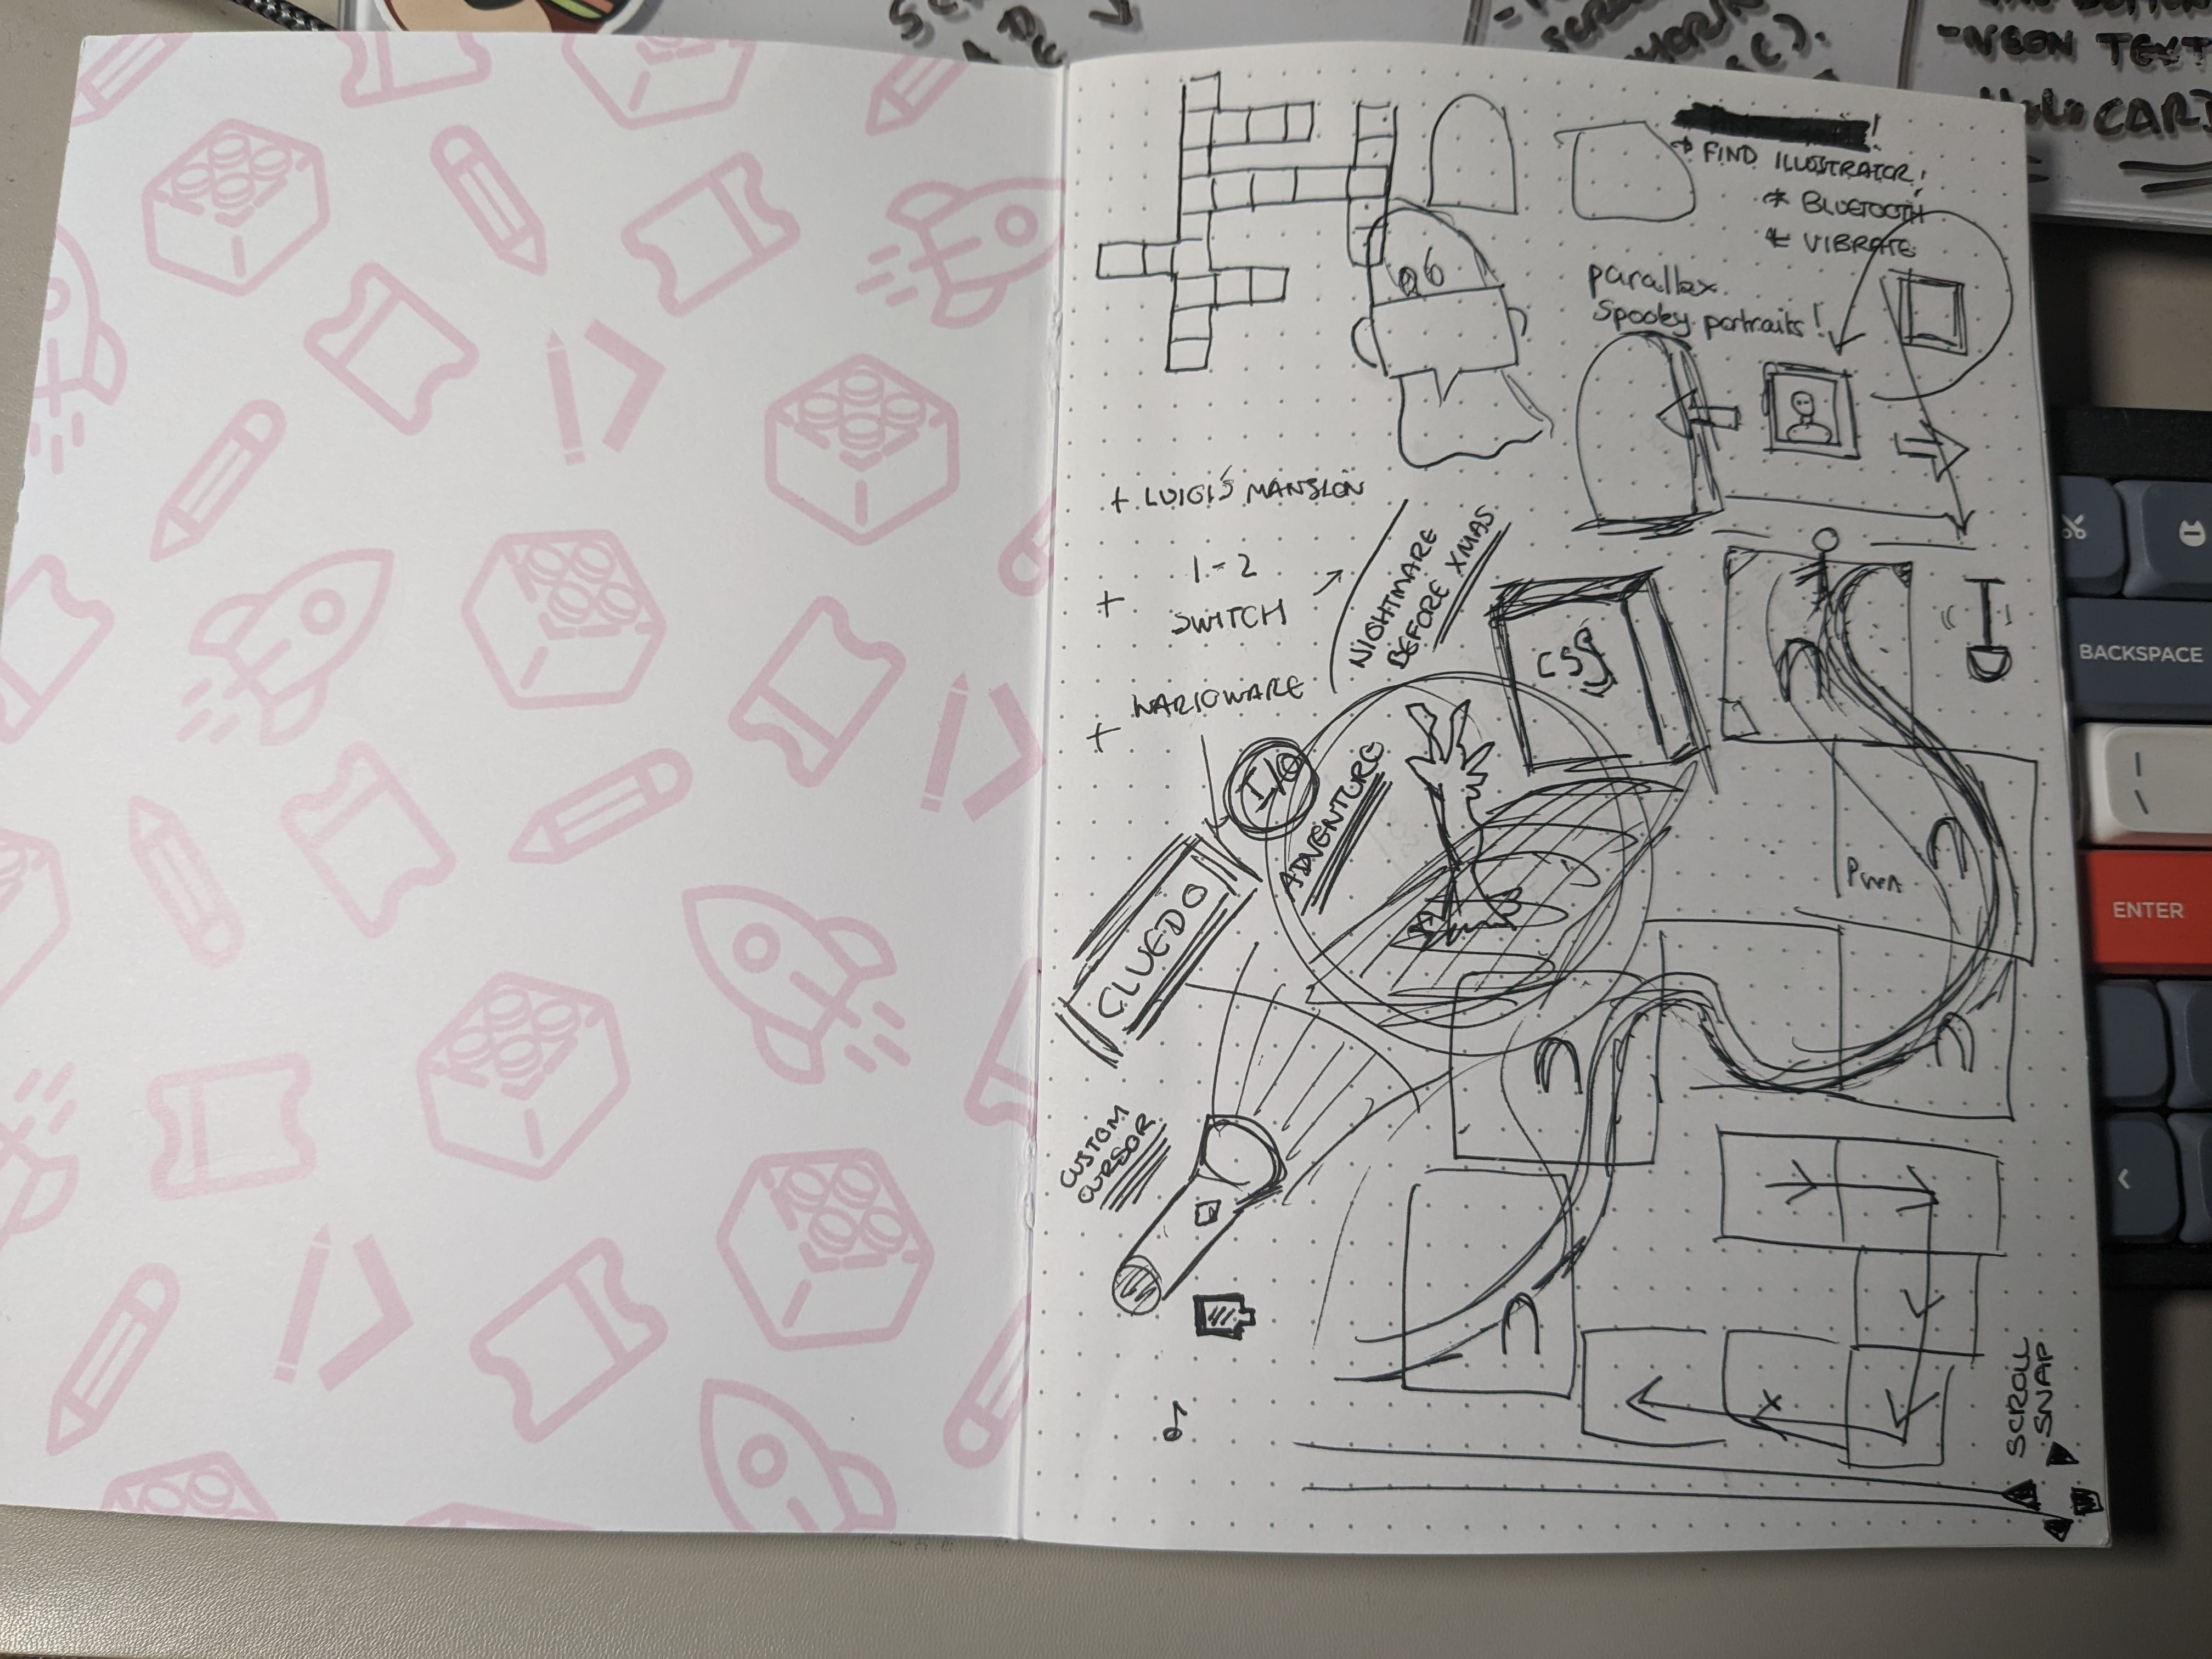 Un carnet est posé sur un bureau et contient divers doodles et gribouillis en lien avec le projet.